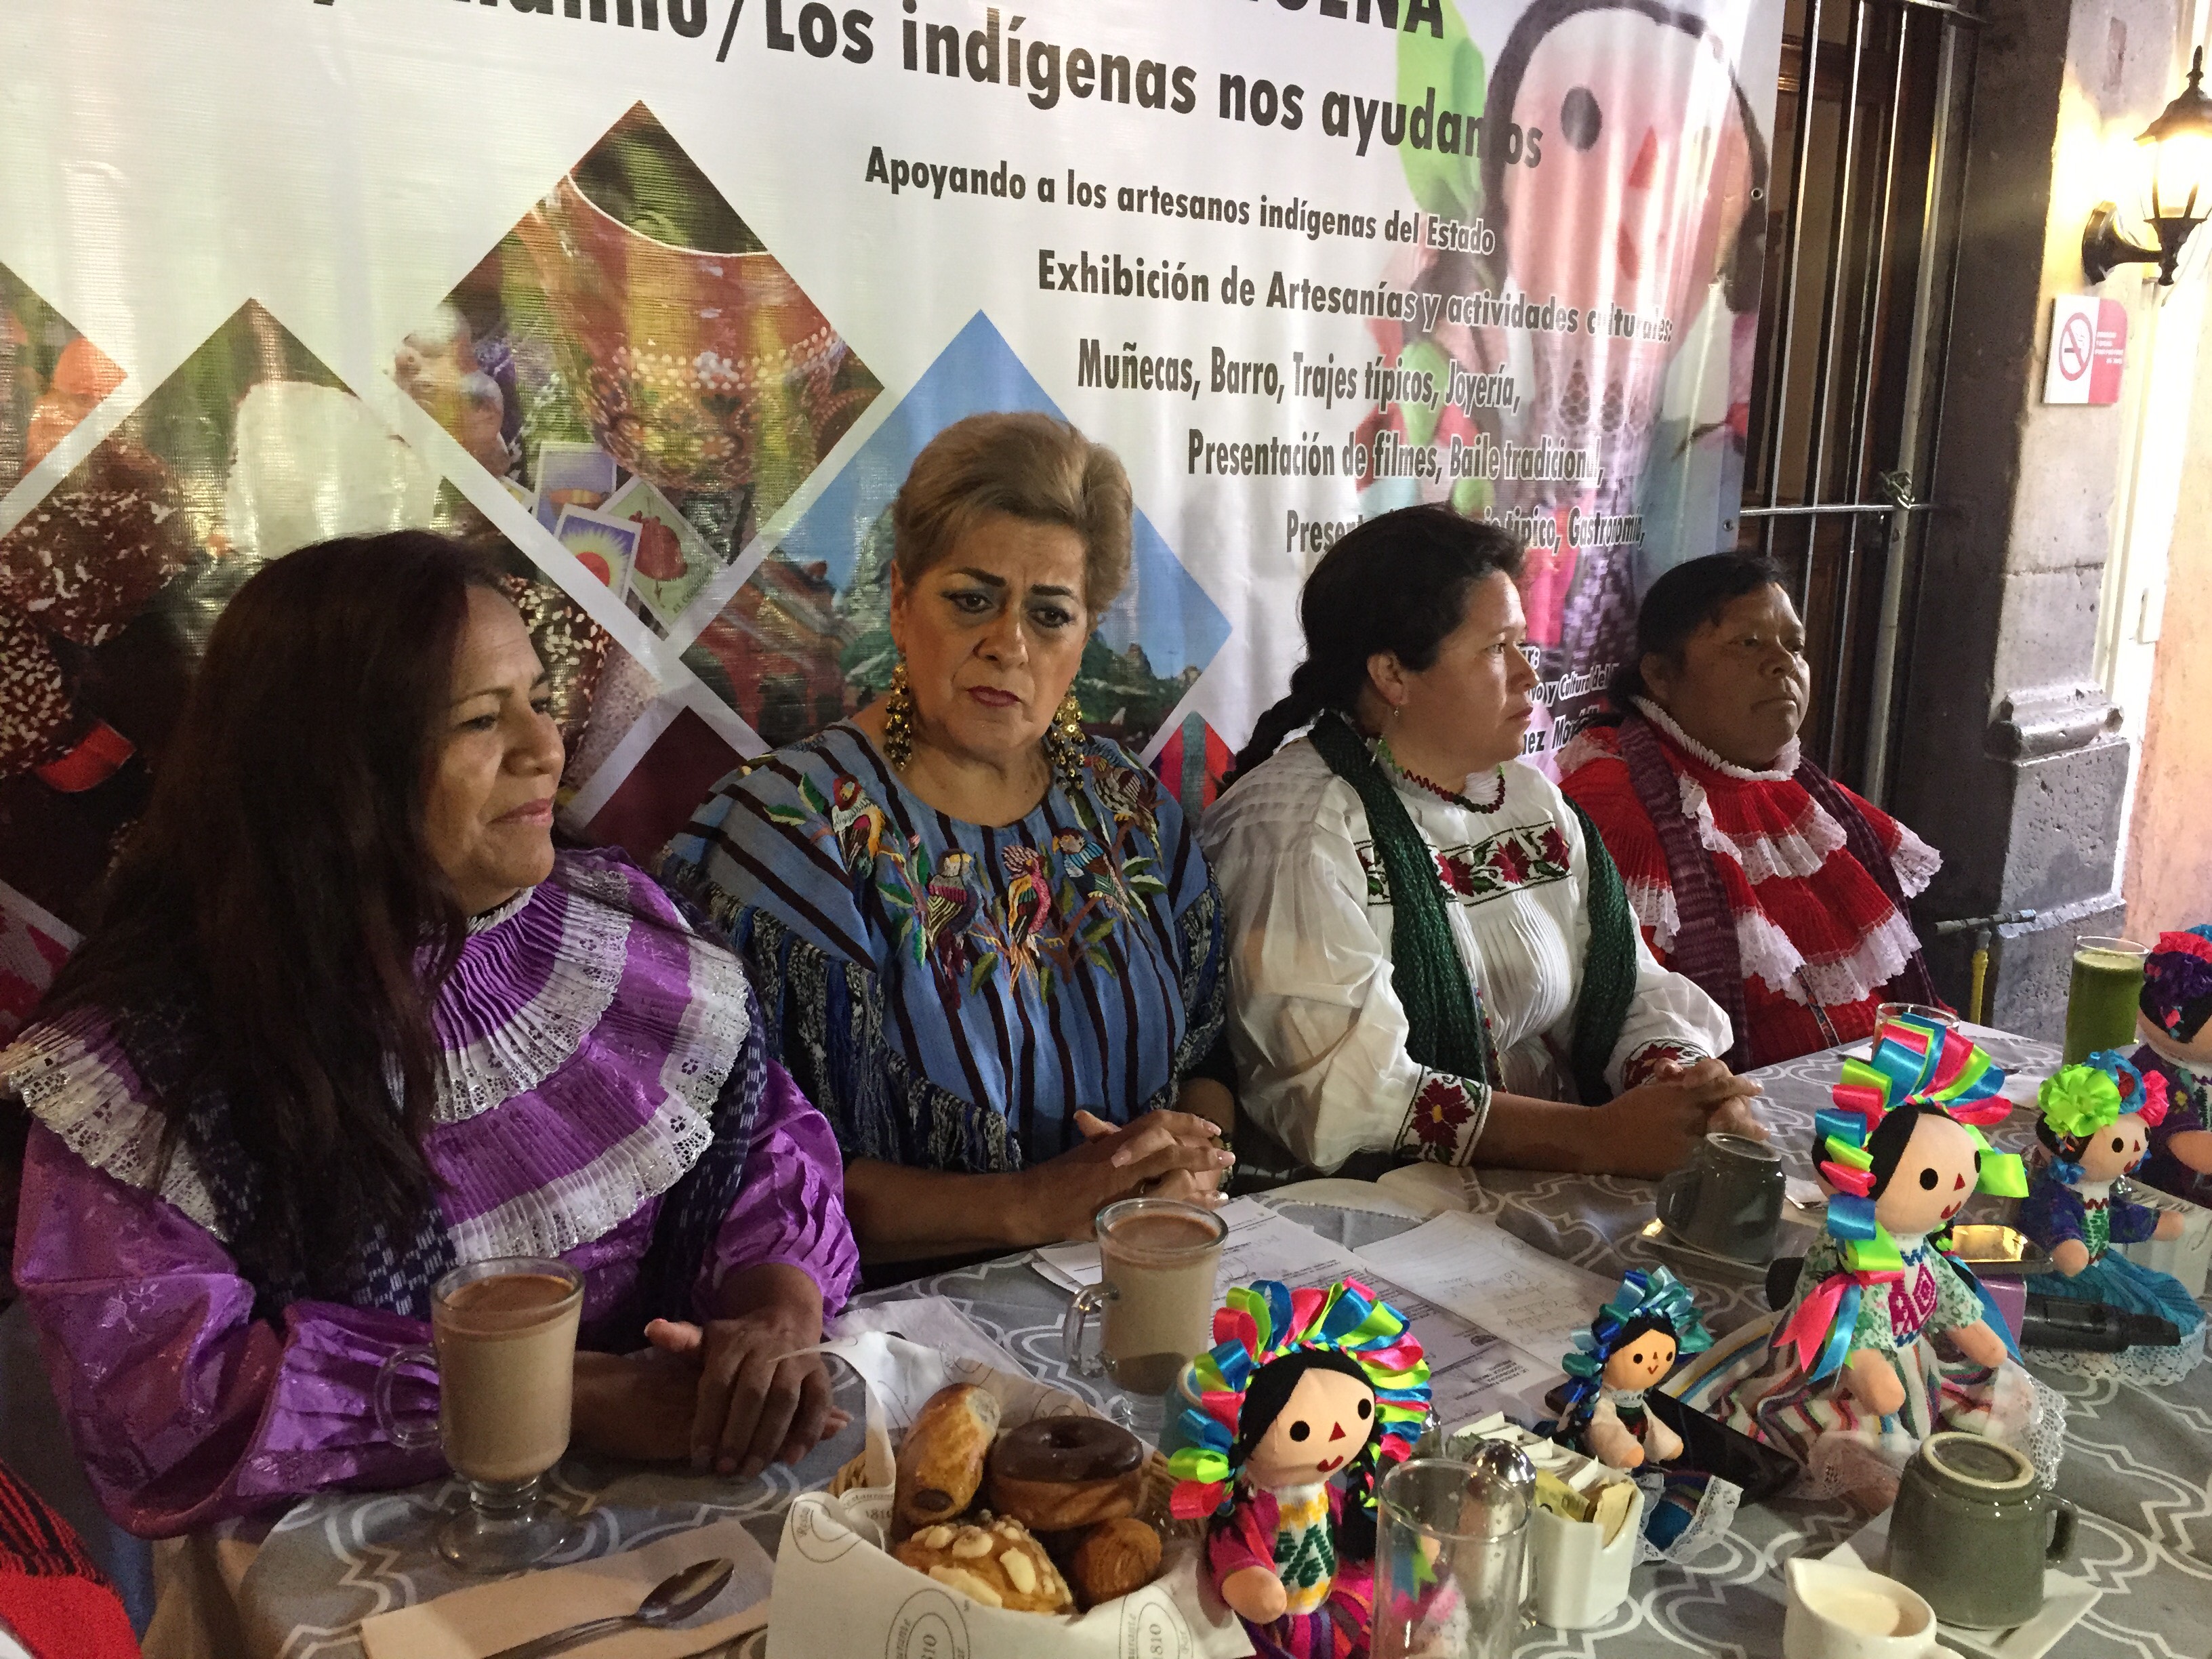  Centro Educativo y Cultural “Manuel Gómez Morín” albergará Feria Artesanal Indígena el fin de semana